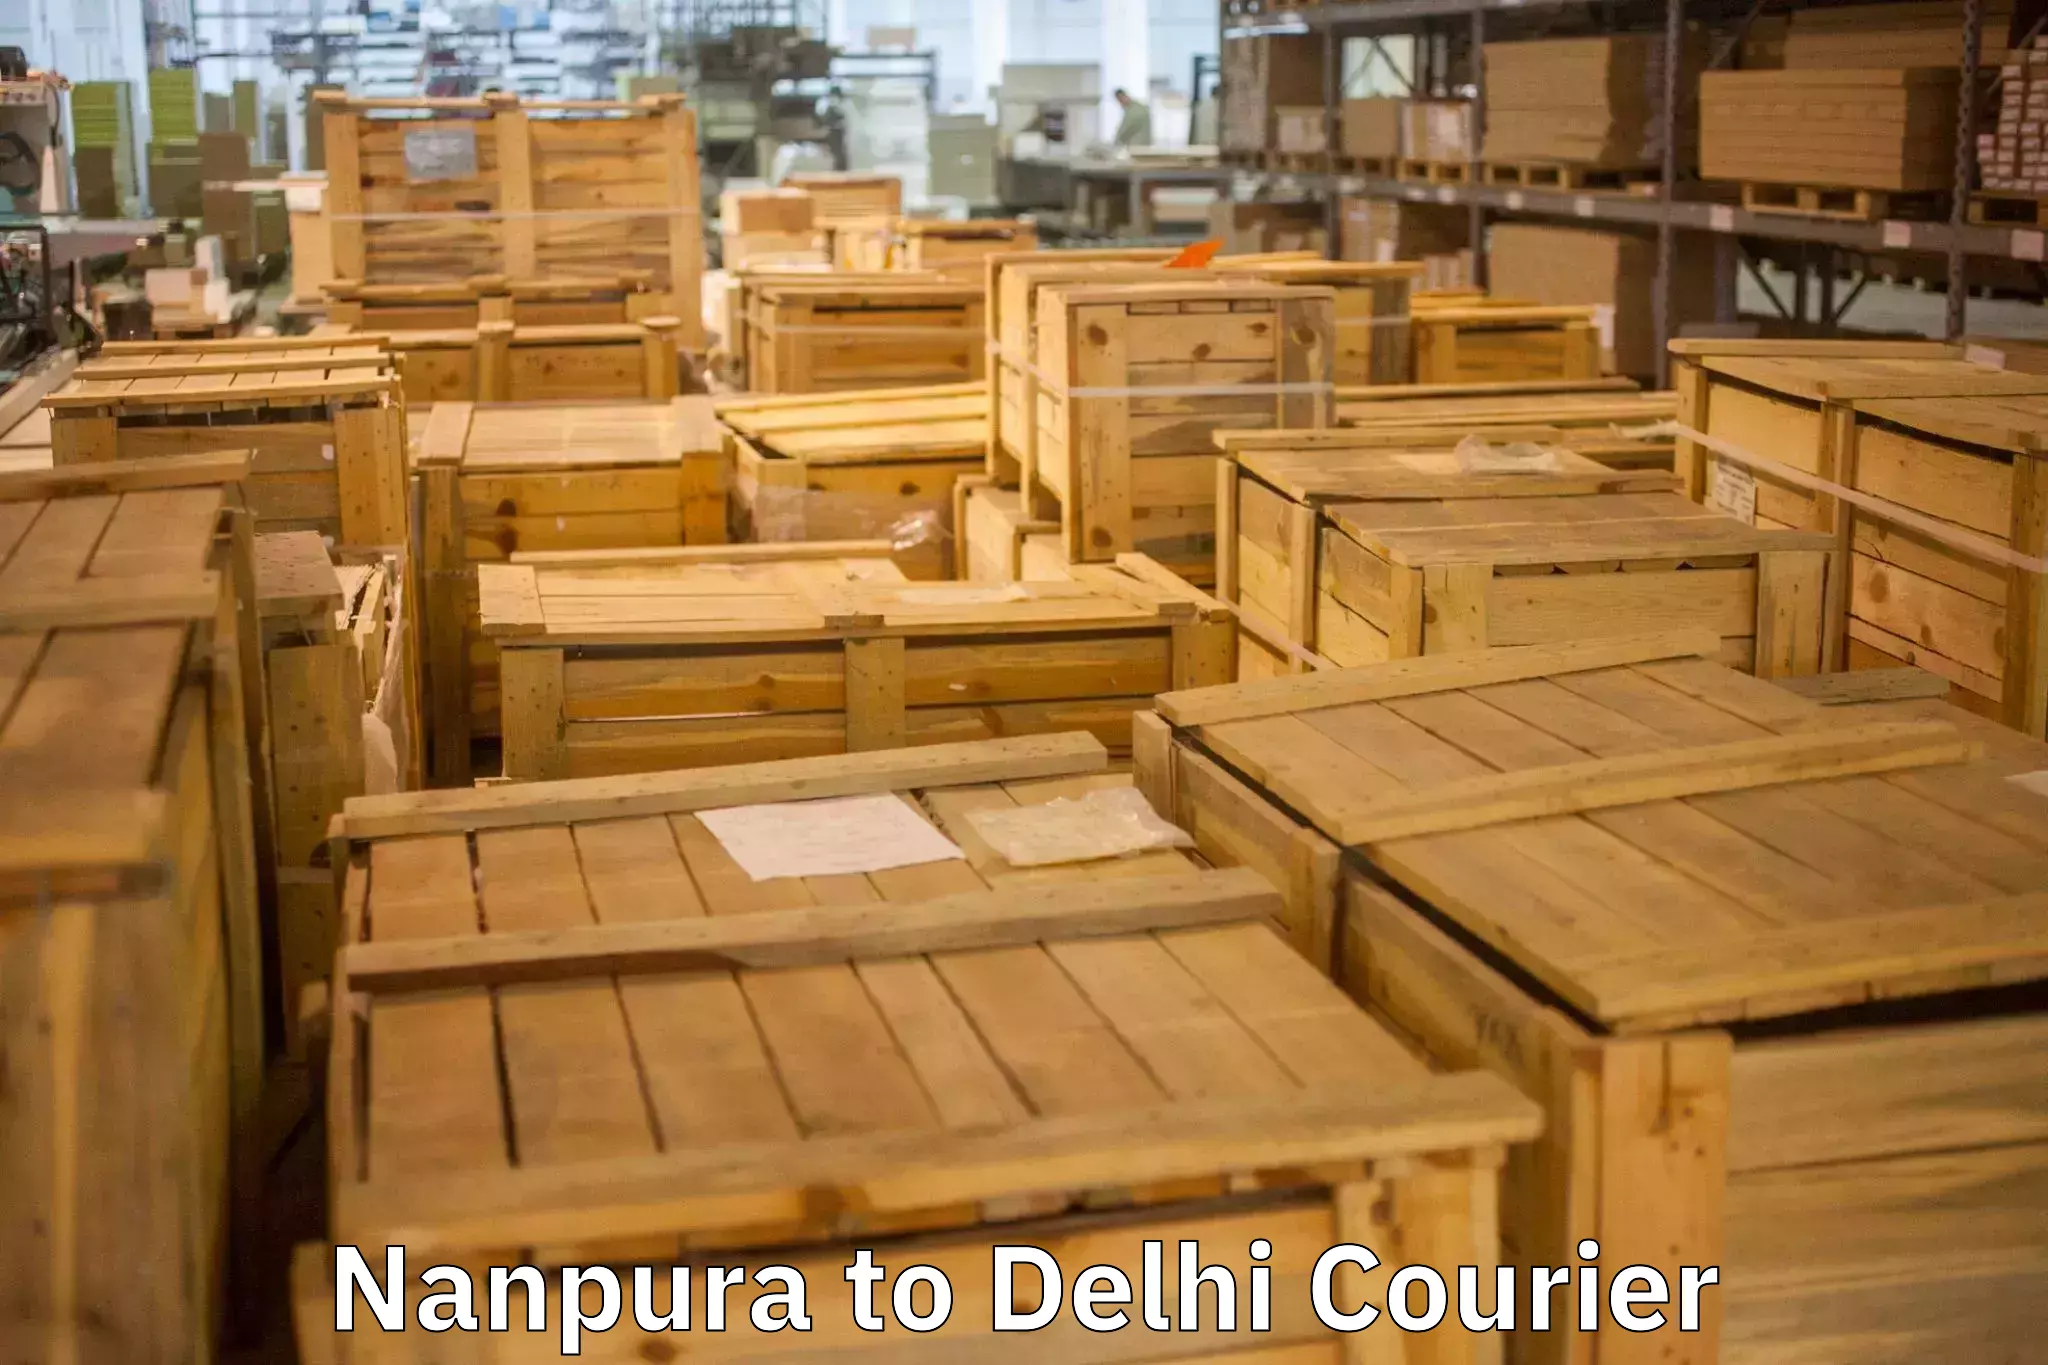 Furniture moving experts Nanpura to Delhi